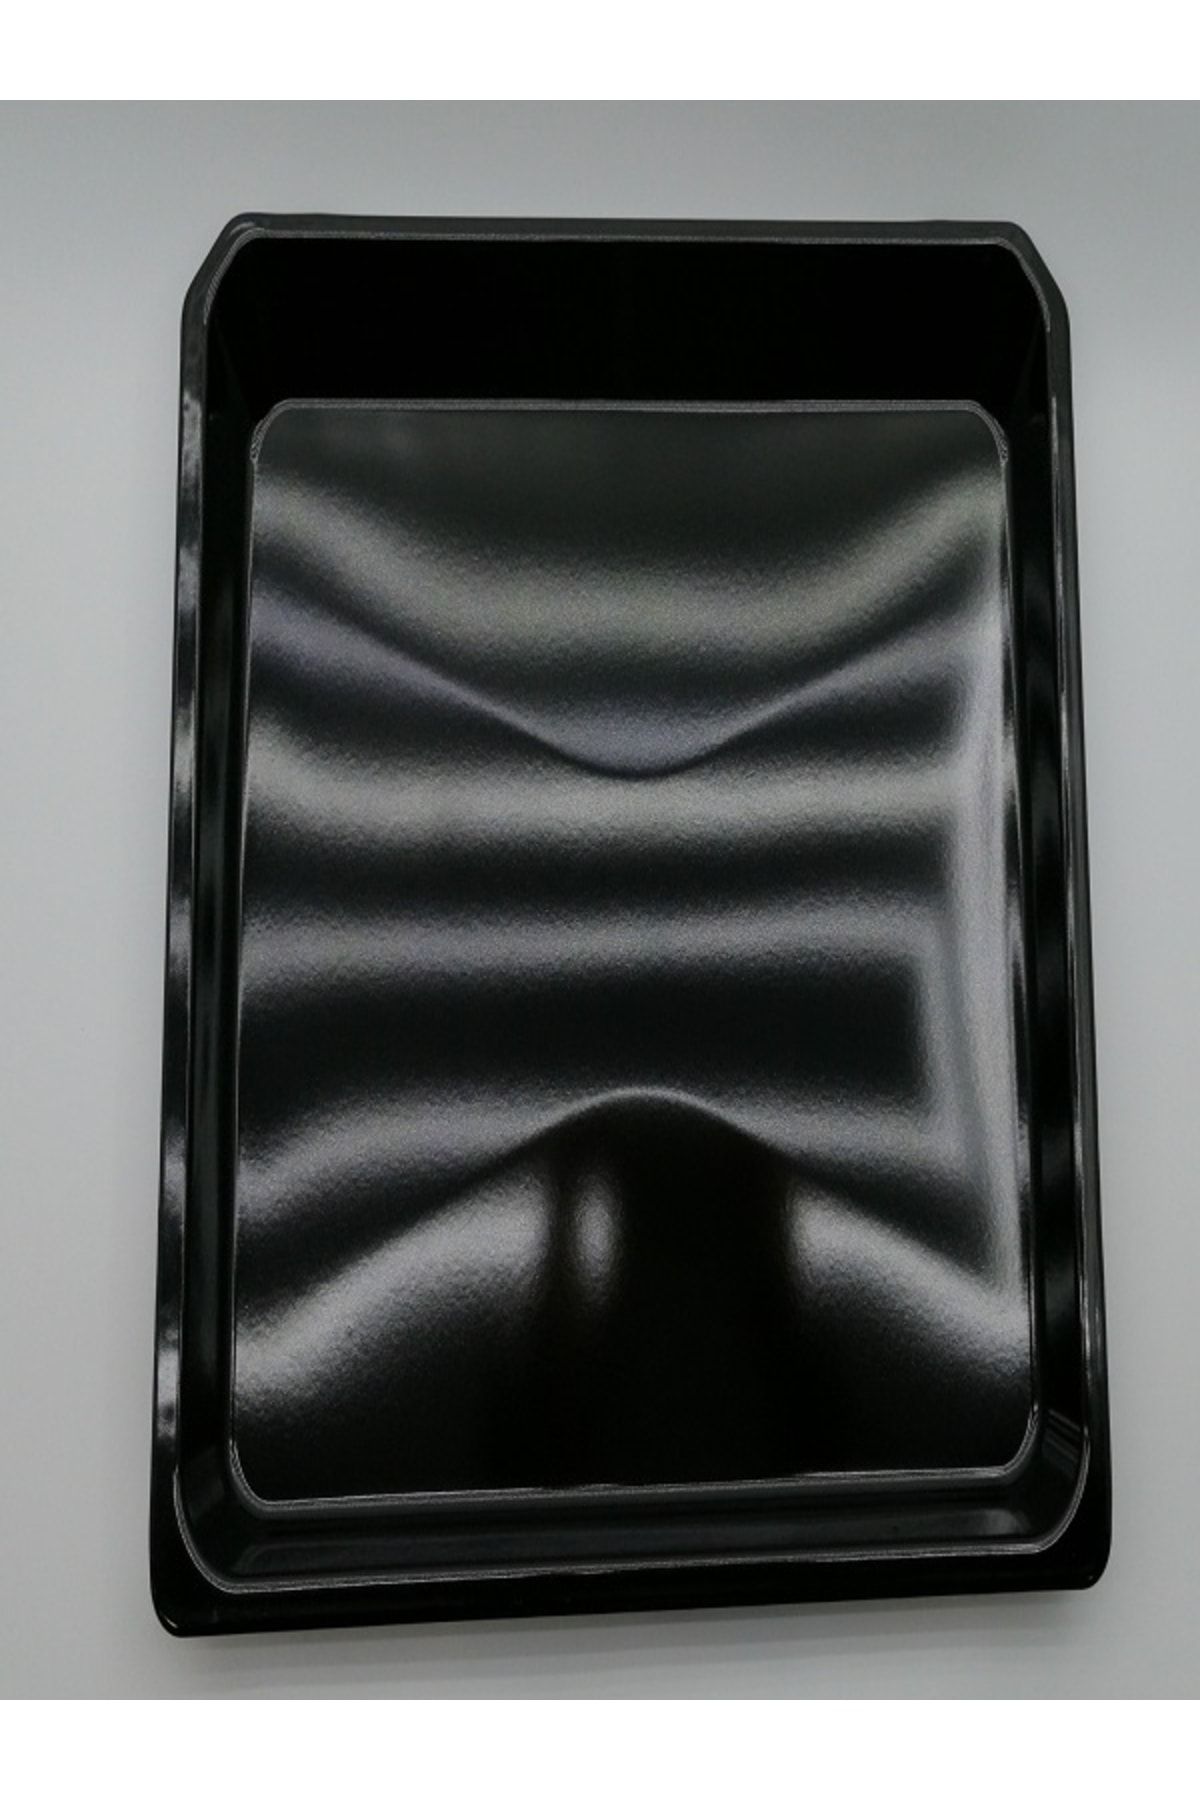 Arçelik Ankastre Fırın Standart Tepsi Yeni Siyah 37.5cmx46.5cm Derinlik 5cm 219480003